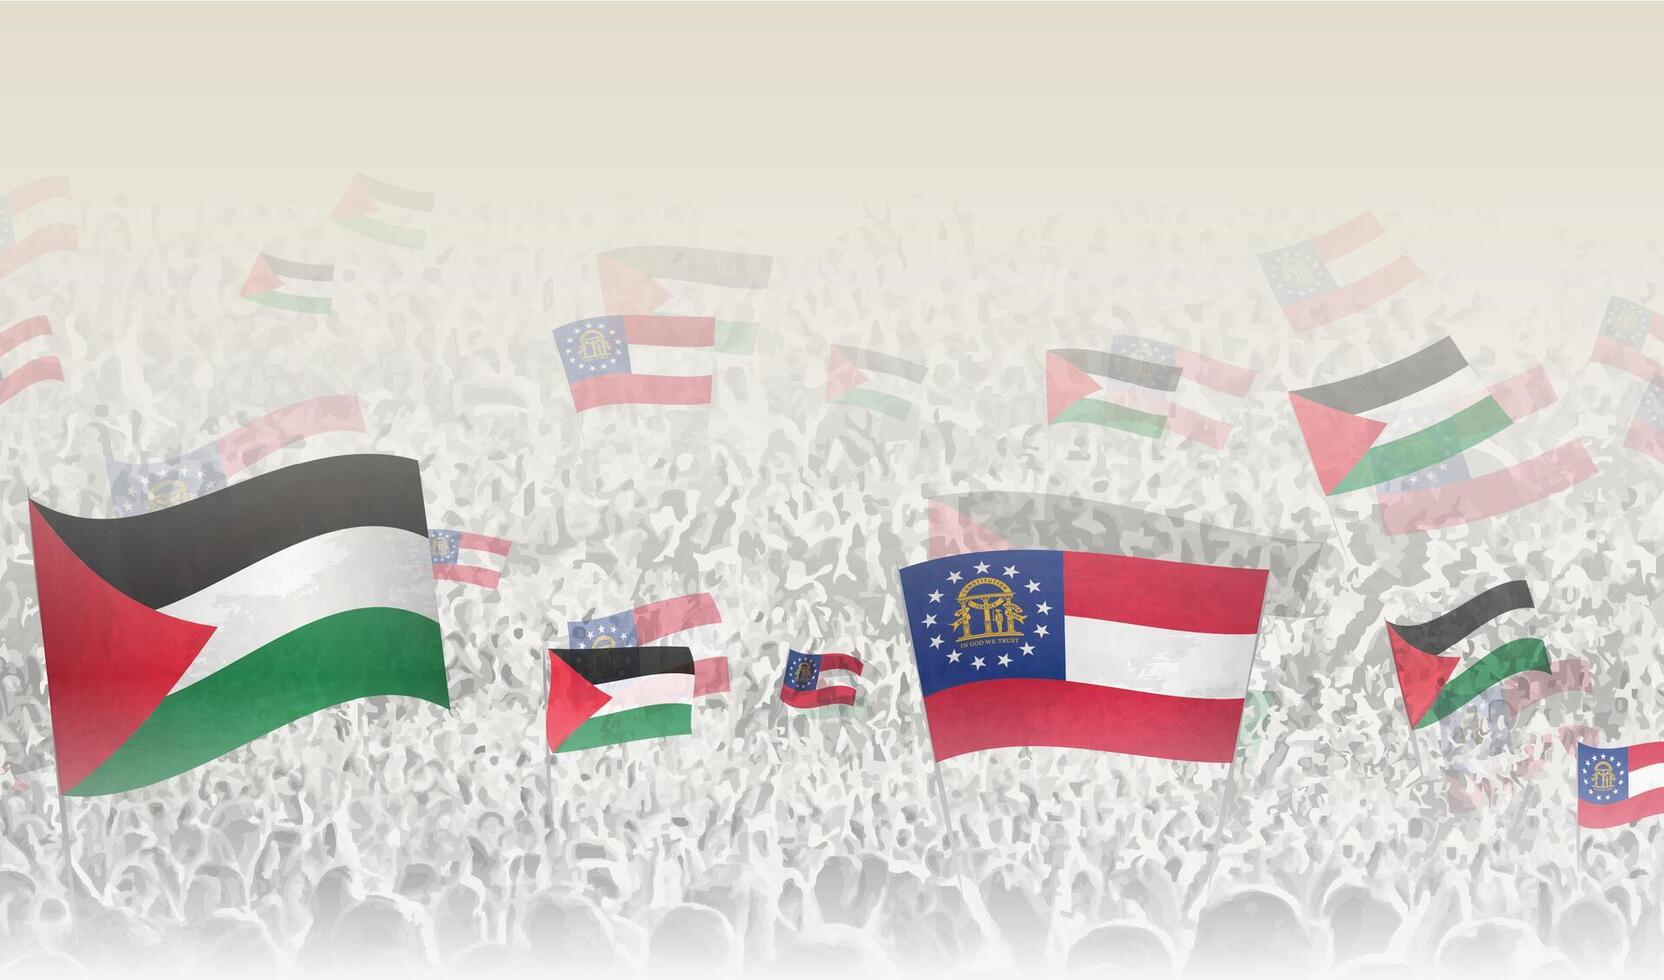 Palästina und Georgia Flaggen im ein Menge von Jubel Personen. vektor